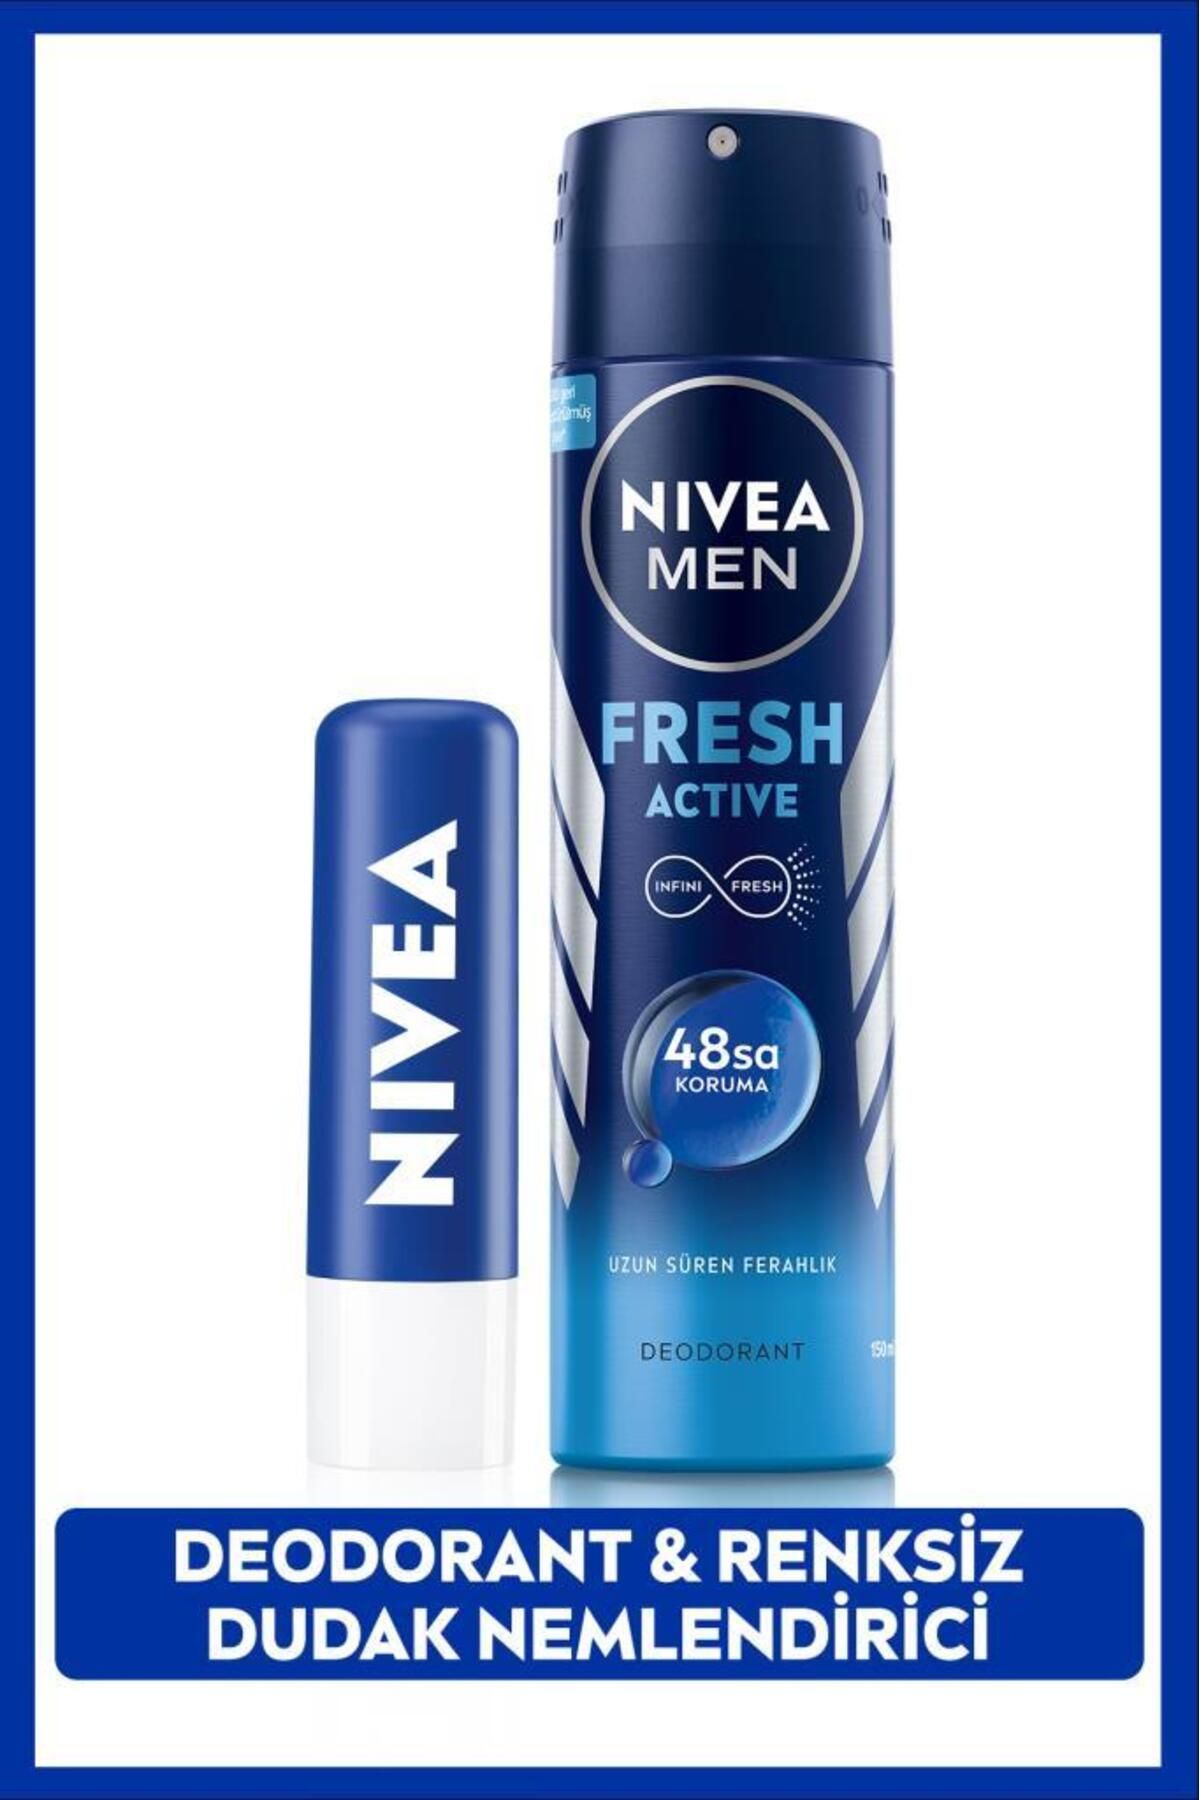 NIVEA MEN Erkek Sprey Deodorant Fresh Active 150ml ve Original Care Renksiz Dudak Bakım Kremi